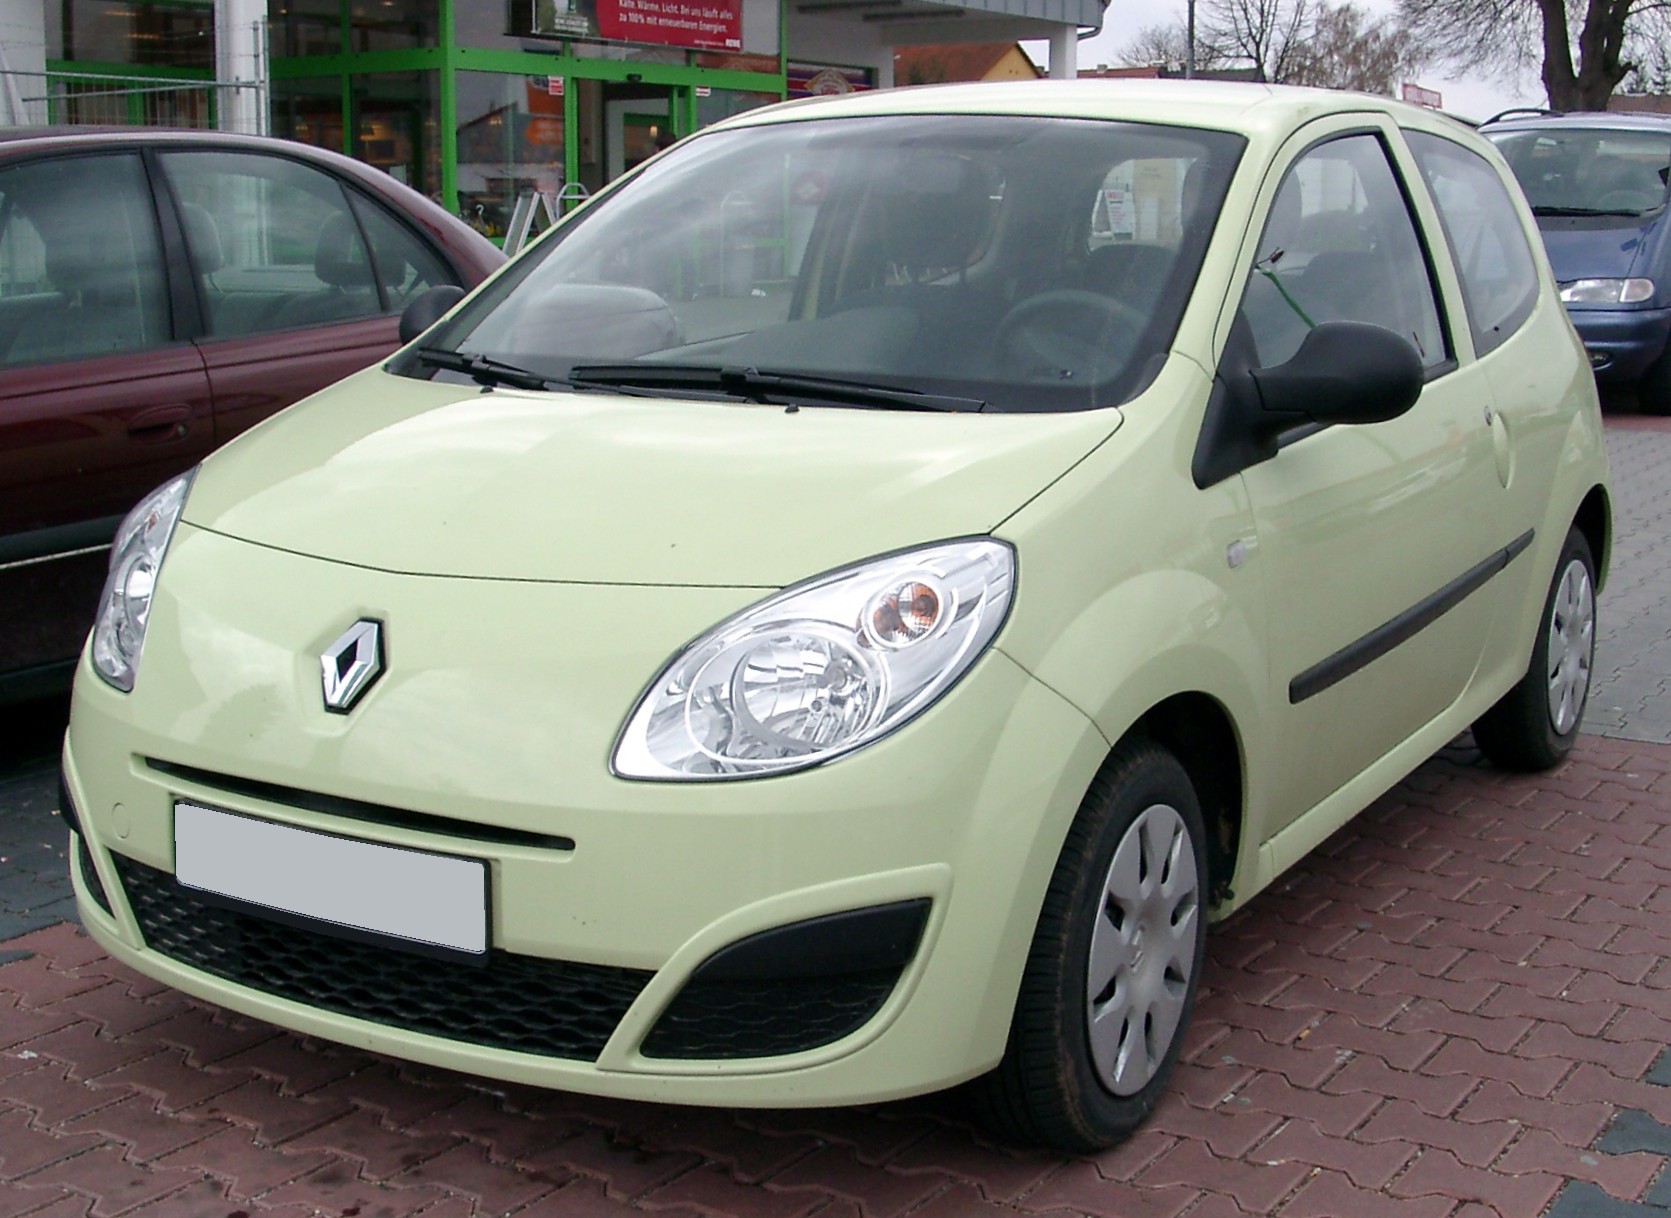 Renault Twingo image #14